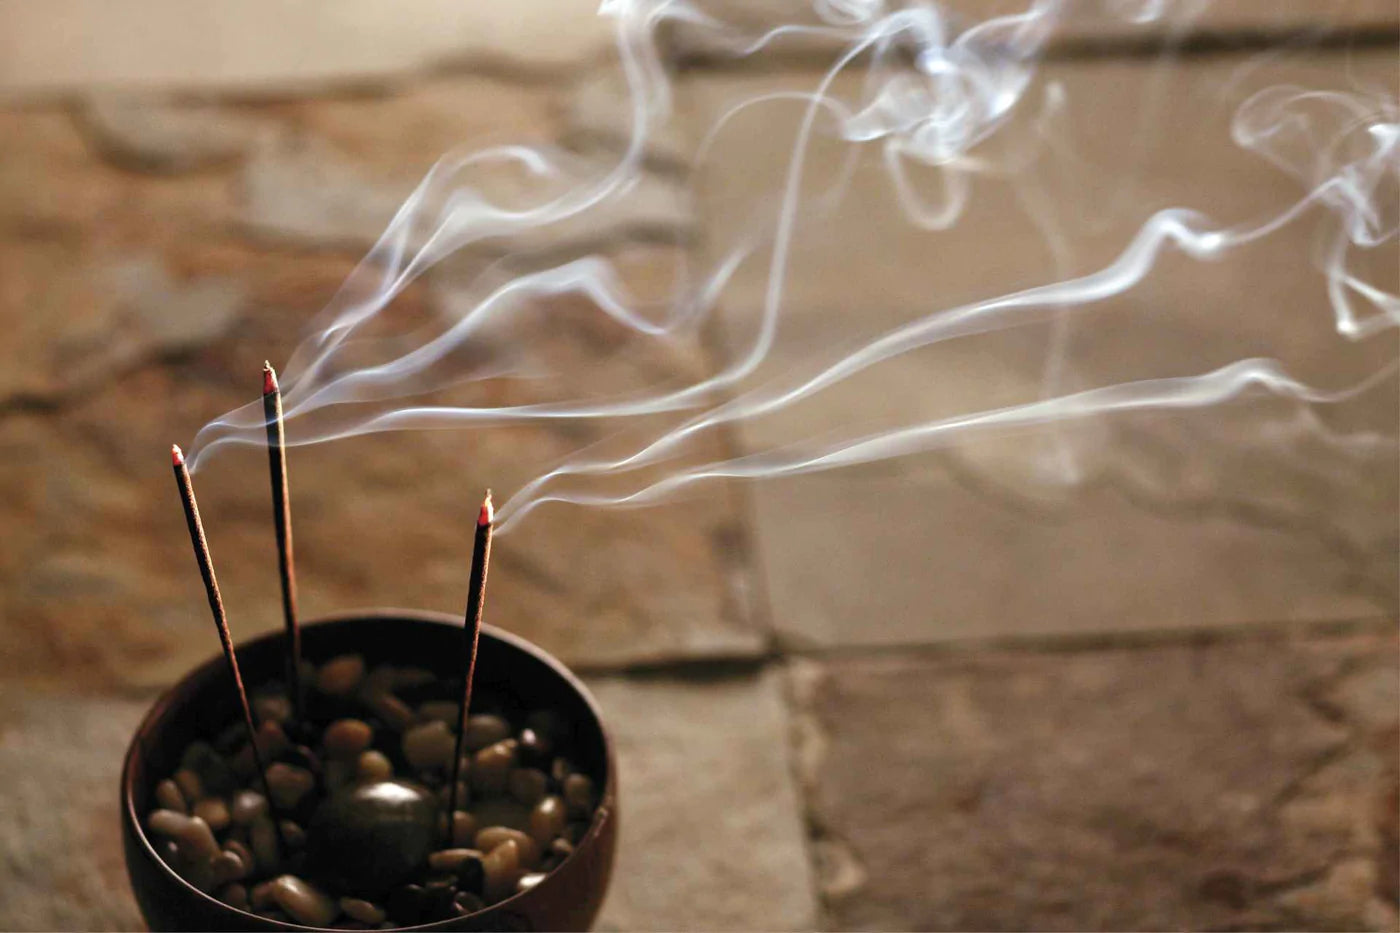 Incense smoke reading